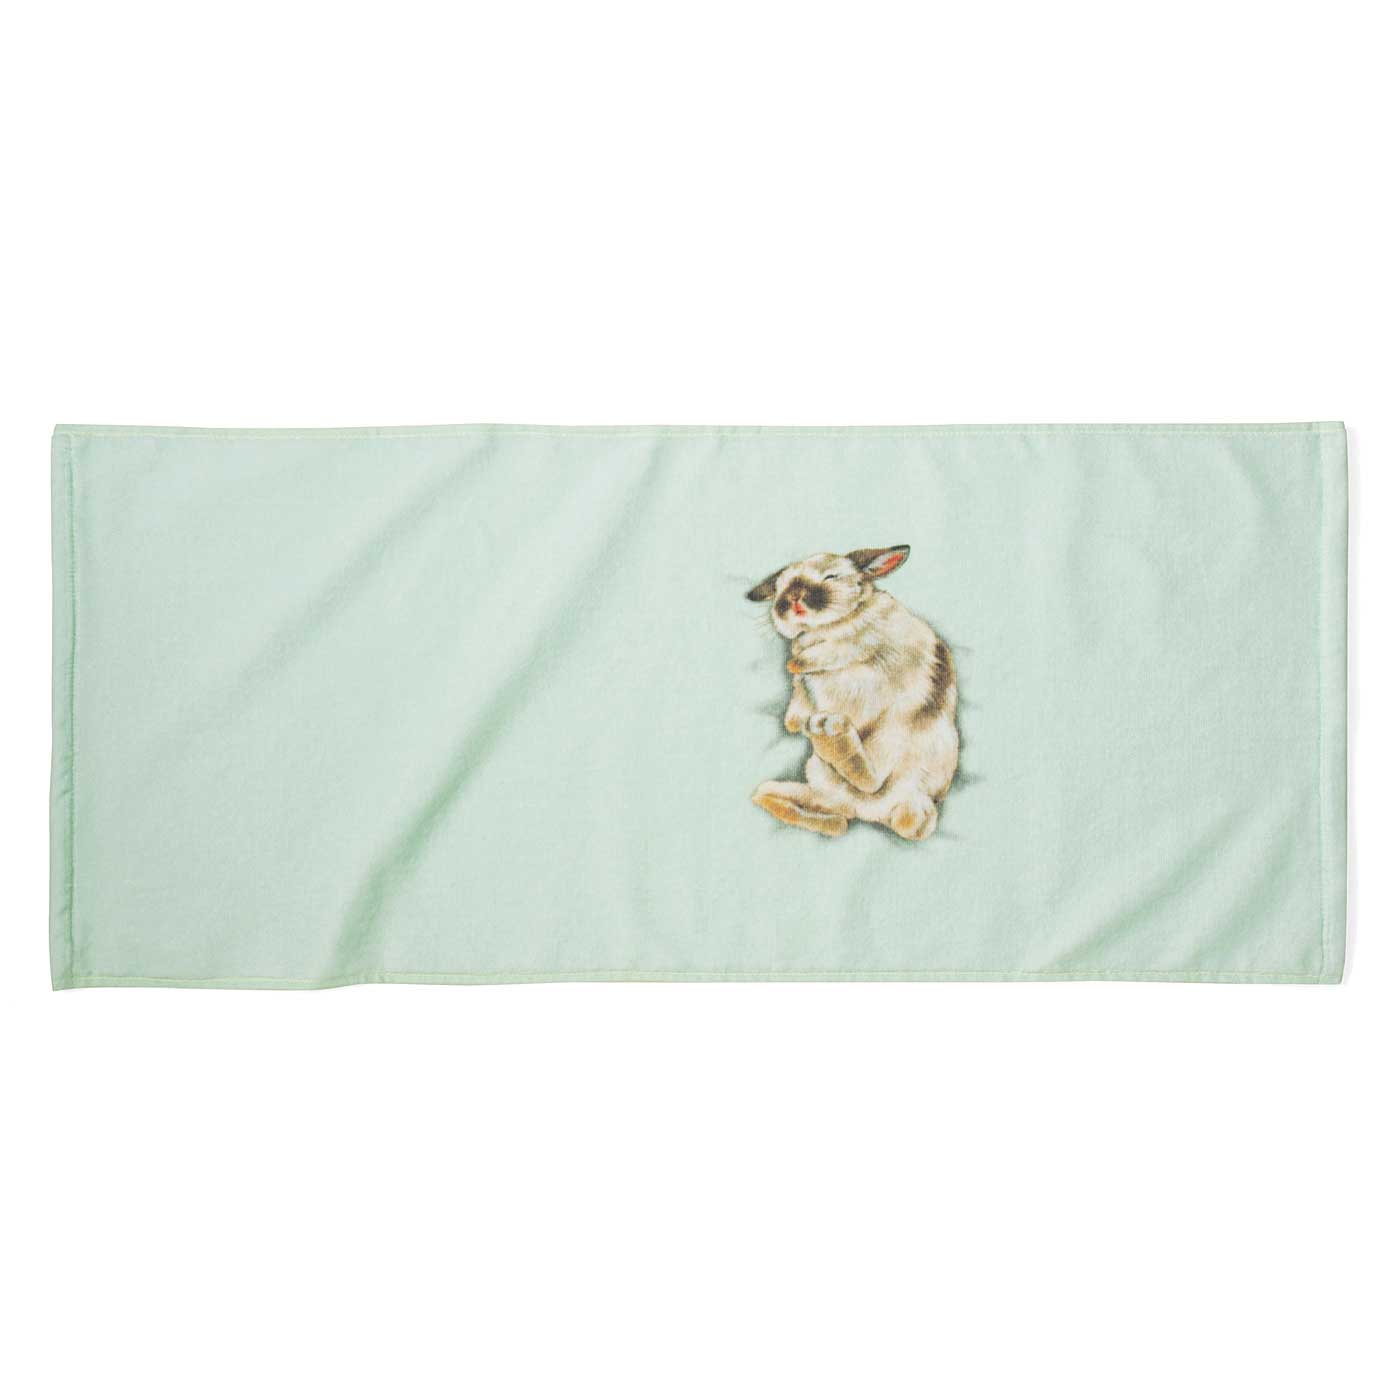 【預購】日本進口 YOU + MORE! 睡著兔仔枕頭毛巾 - Cnjpkitchen ❤️ 🇯🇵日本廚具 家居生活雜貨店